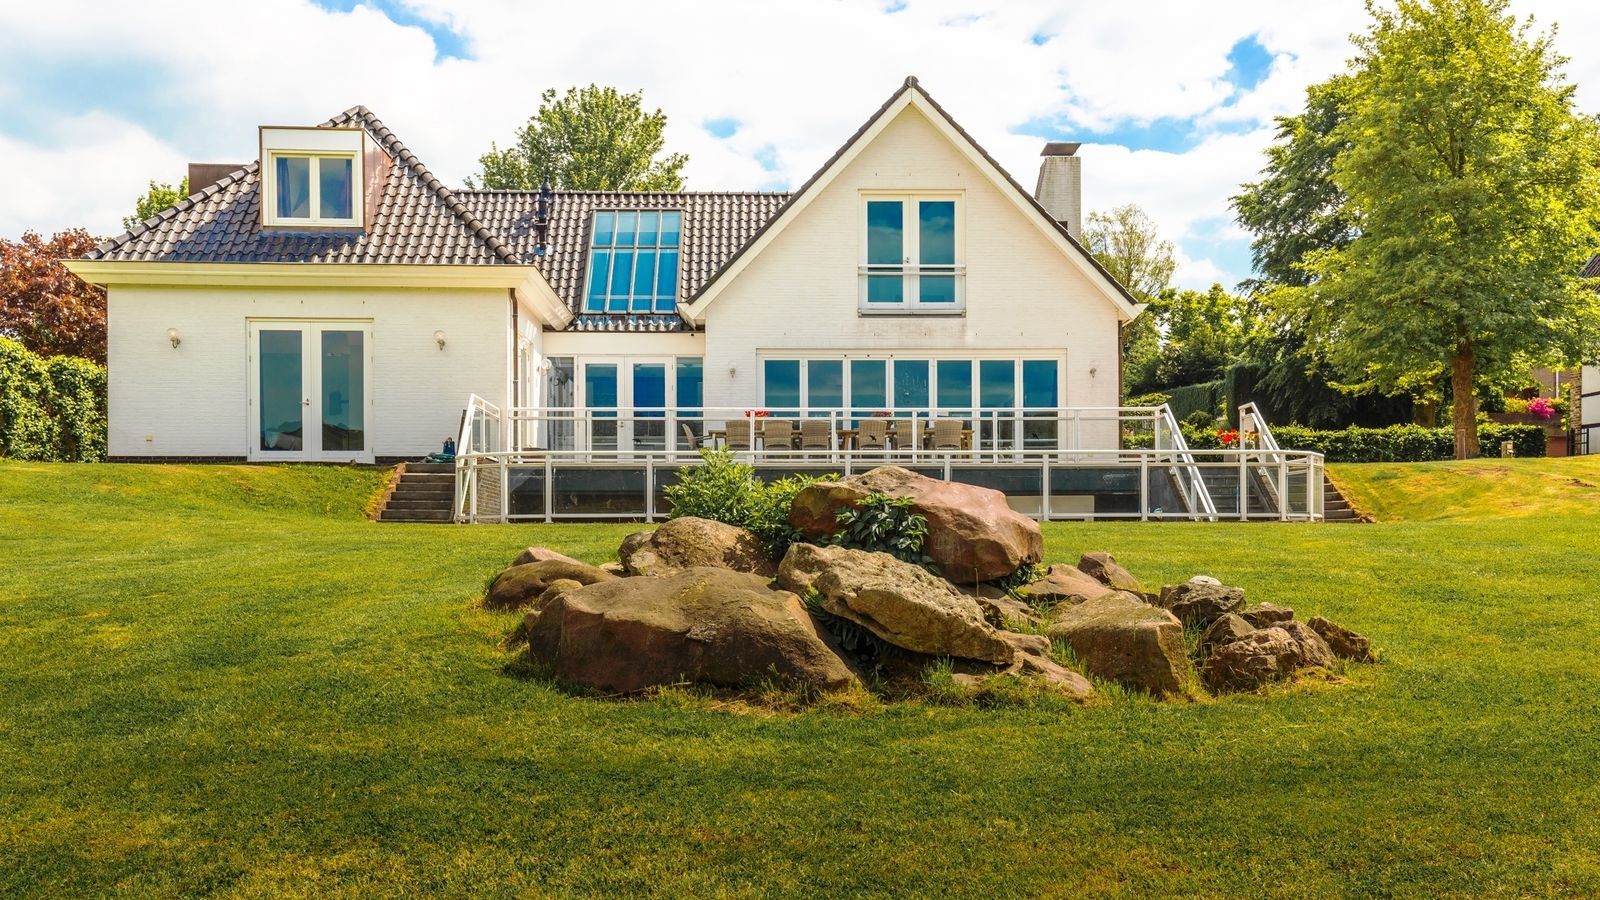 Villapparte-Special Villa's-luxe vakantiehuis voor 21 personen-binnen zwembad-sauna-groepsaccommodatie-Zuid Limburg